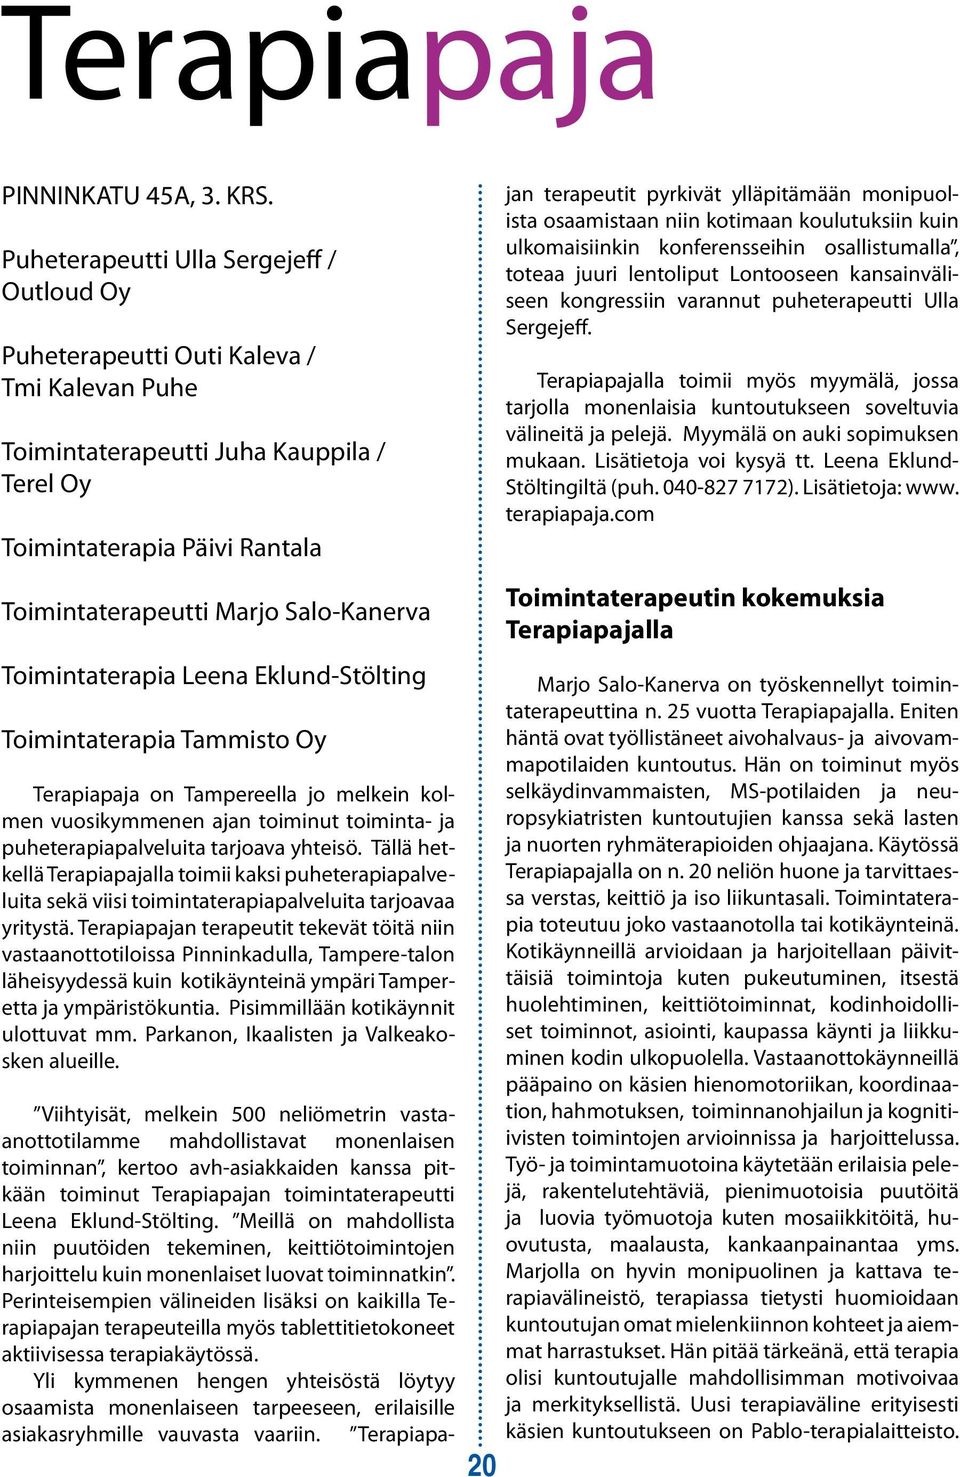 Salo-Kanerva Toimintaterapia Leena Eklund-Stölting Toimintaterapia Tammisto Oy Terapiapaja on Tampereella jo melkein kolmen vuosikymmenen ajan toiminut toiminta- ja puheterapiapalveluita tarjoava